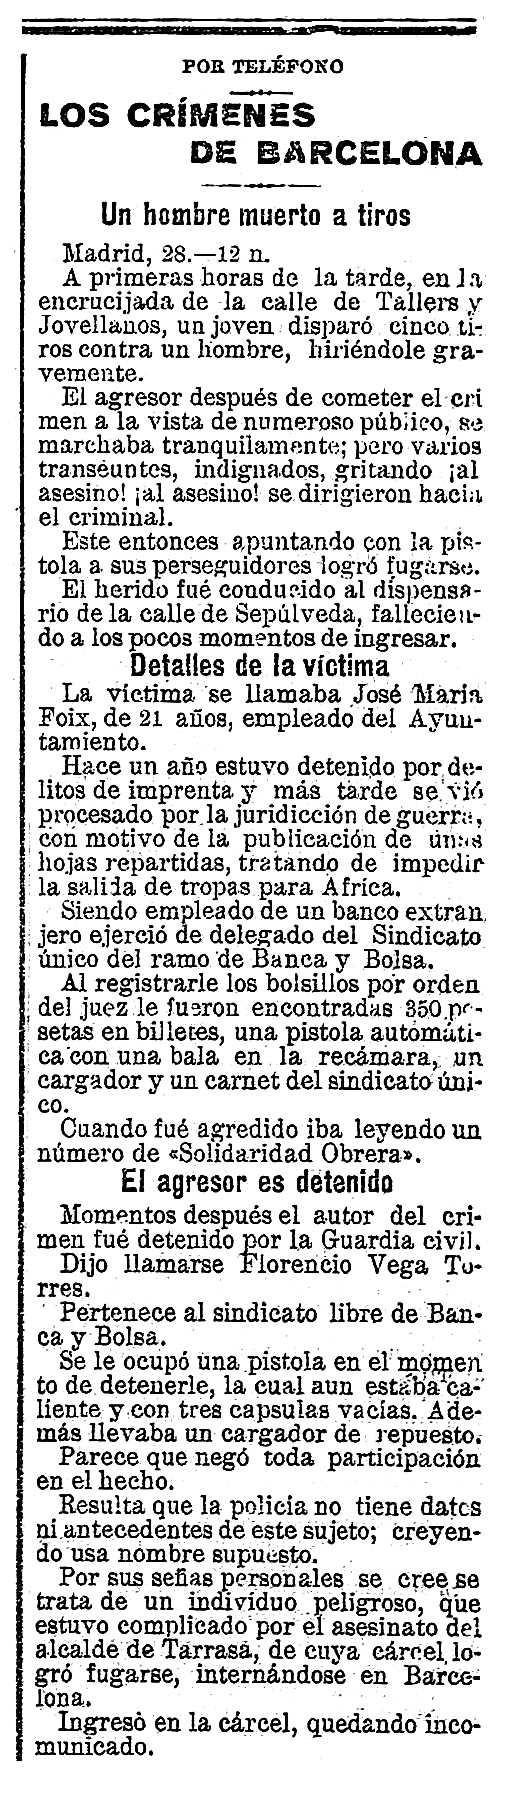 Notícia de l'assassinat de Josep Maria Foix Vila apareguda en el diari d'Almeria "La Independencia" del 29 d'abril de 1923